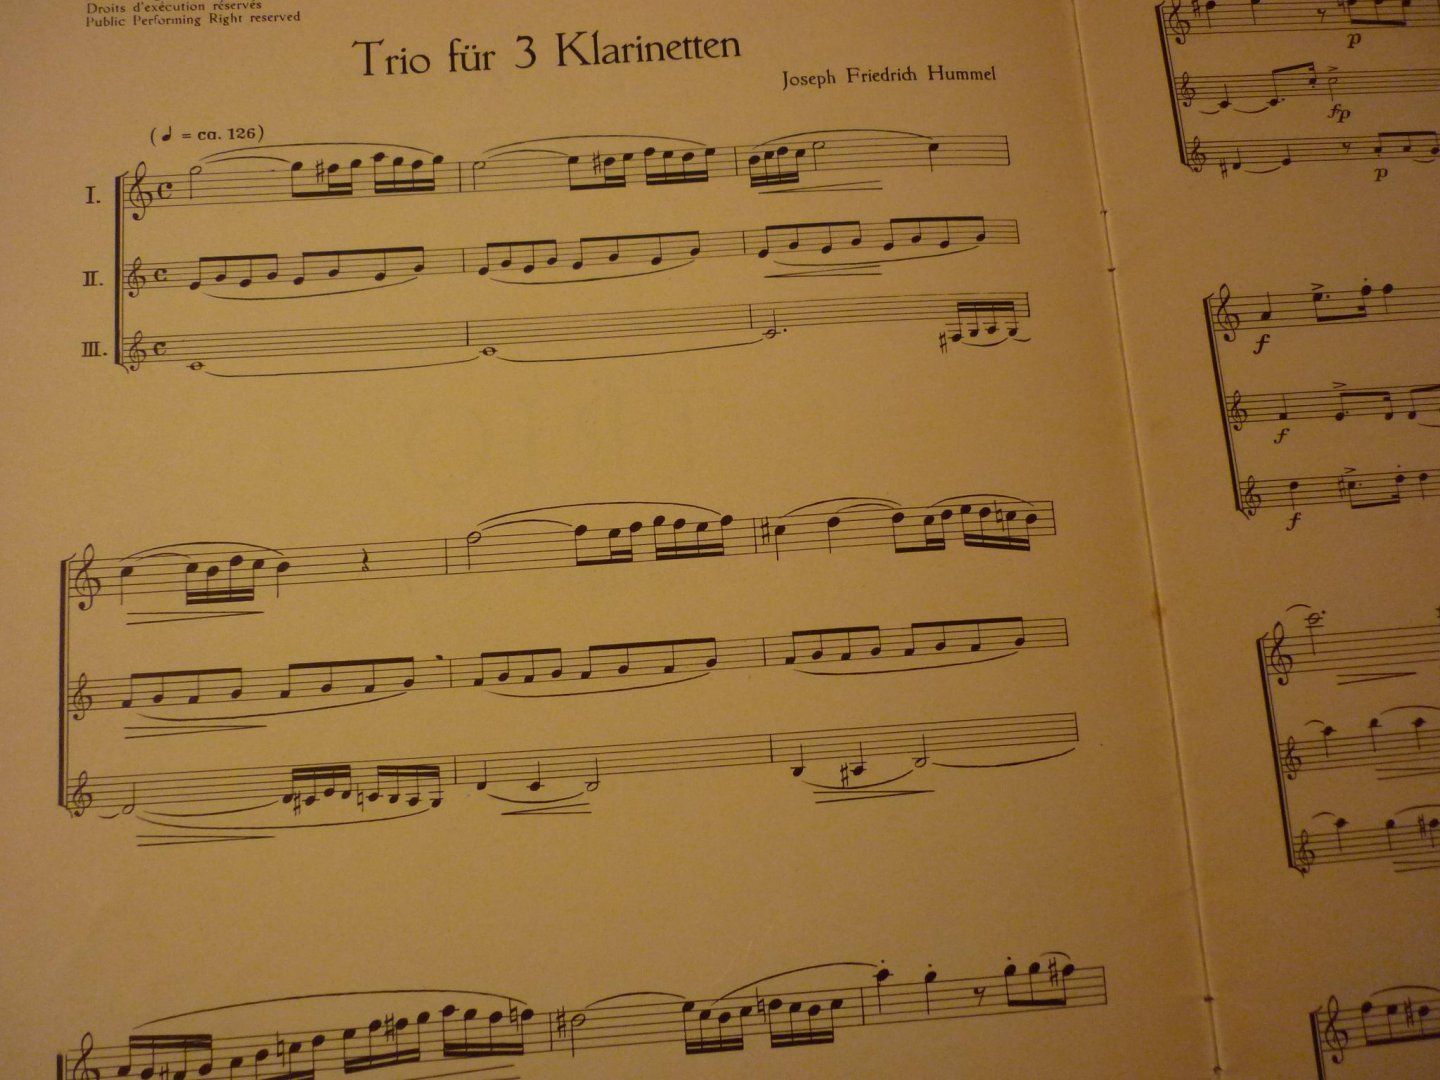 Hummel; Joseph Friedrich - Trio B-dur; B flat-major; Si b - maggiore fur 3 Klarinetten